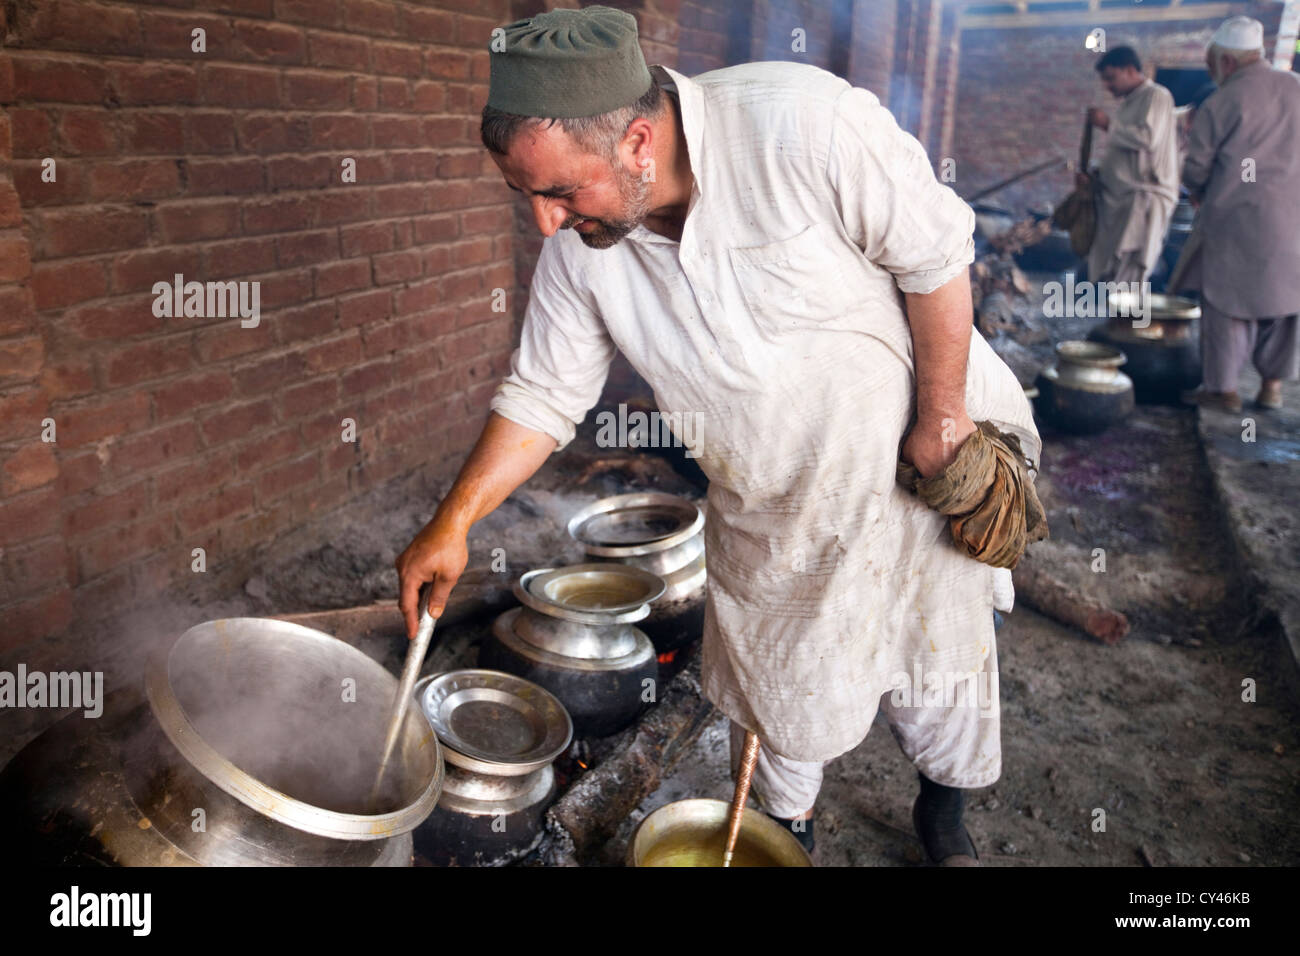 Mohammed Ayub, schlemmen 43, die eine Waza oder traditionellen Kochen in der kaschmirischen Tradition kocht und Speisen am Wazwan serviert. Stockfoto